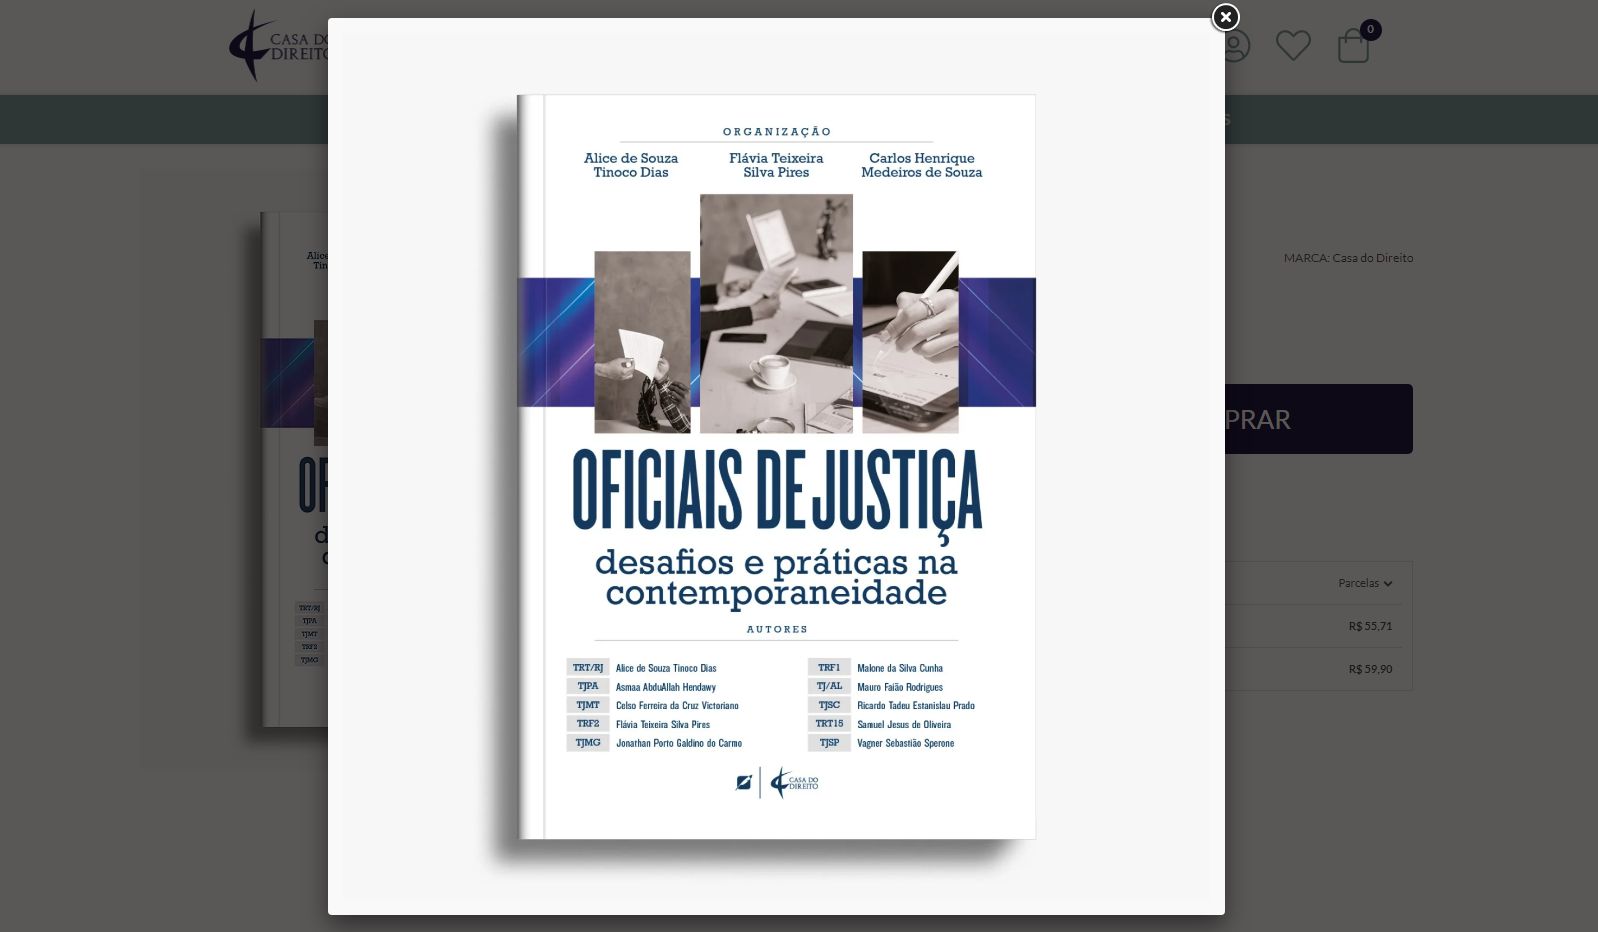 LANÇAMENTO DO E-BOOK “OFICIAIS DE JUSTIÇA: DESAFIOS E PRÁTICAS NA  CONTEMPORANEIDADE” 